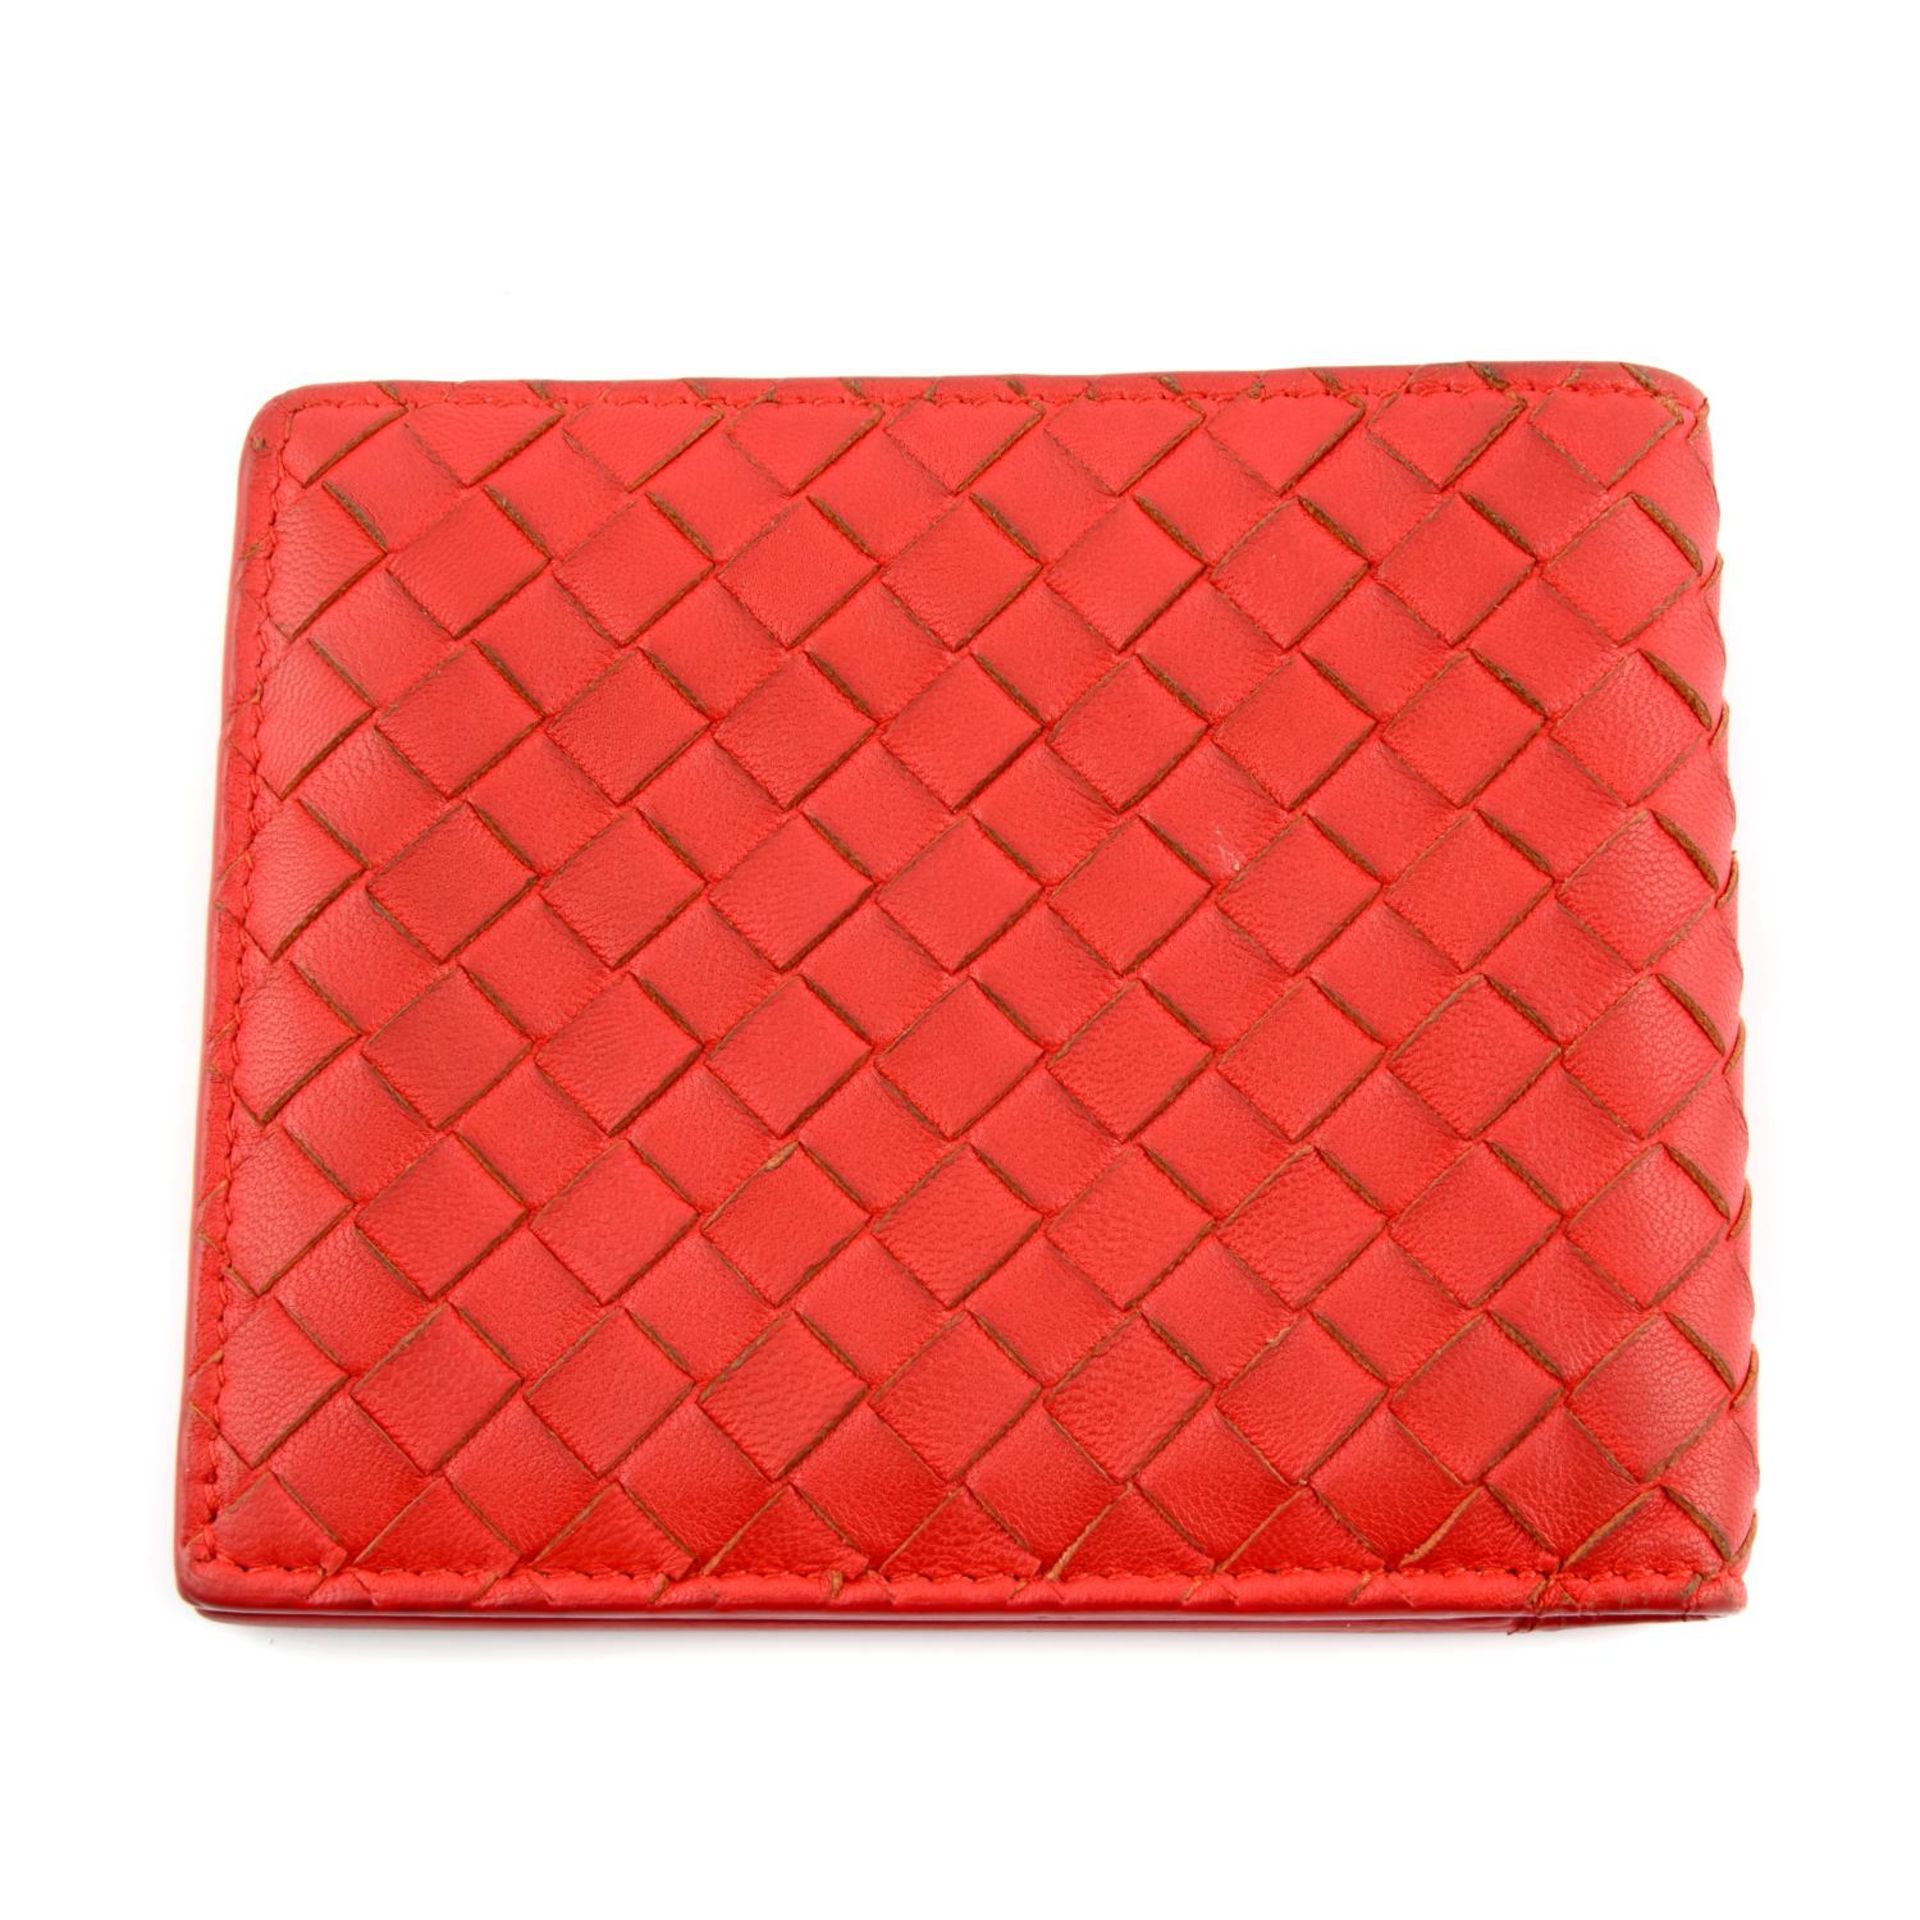 BOTTEGA VENETA - an Intrecciato leather bifold wallet. - Image 2 of 4